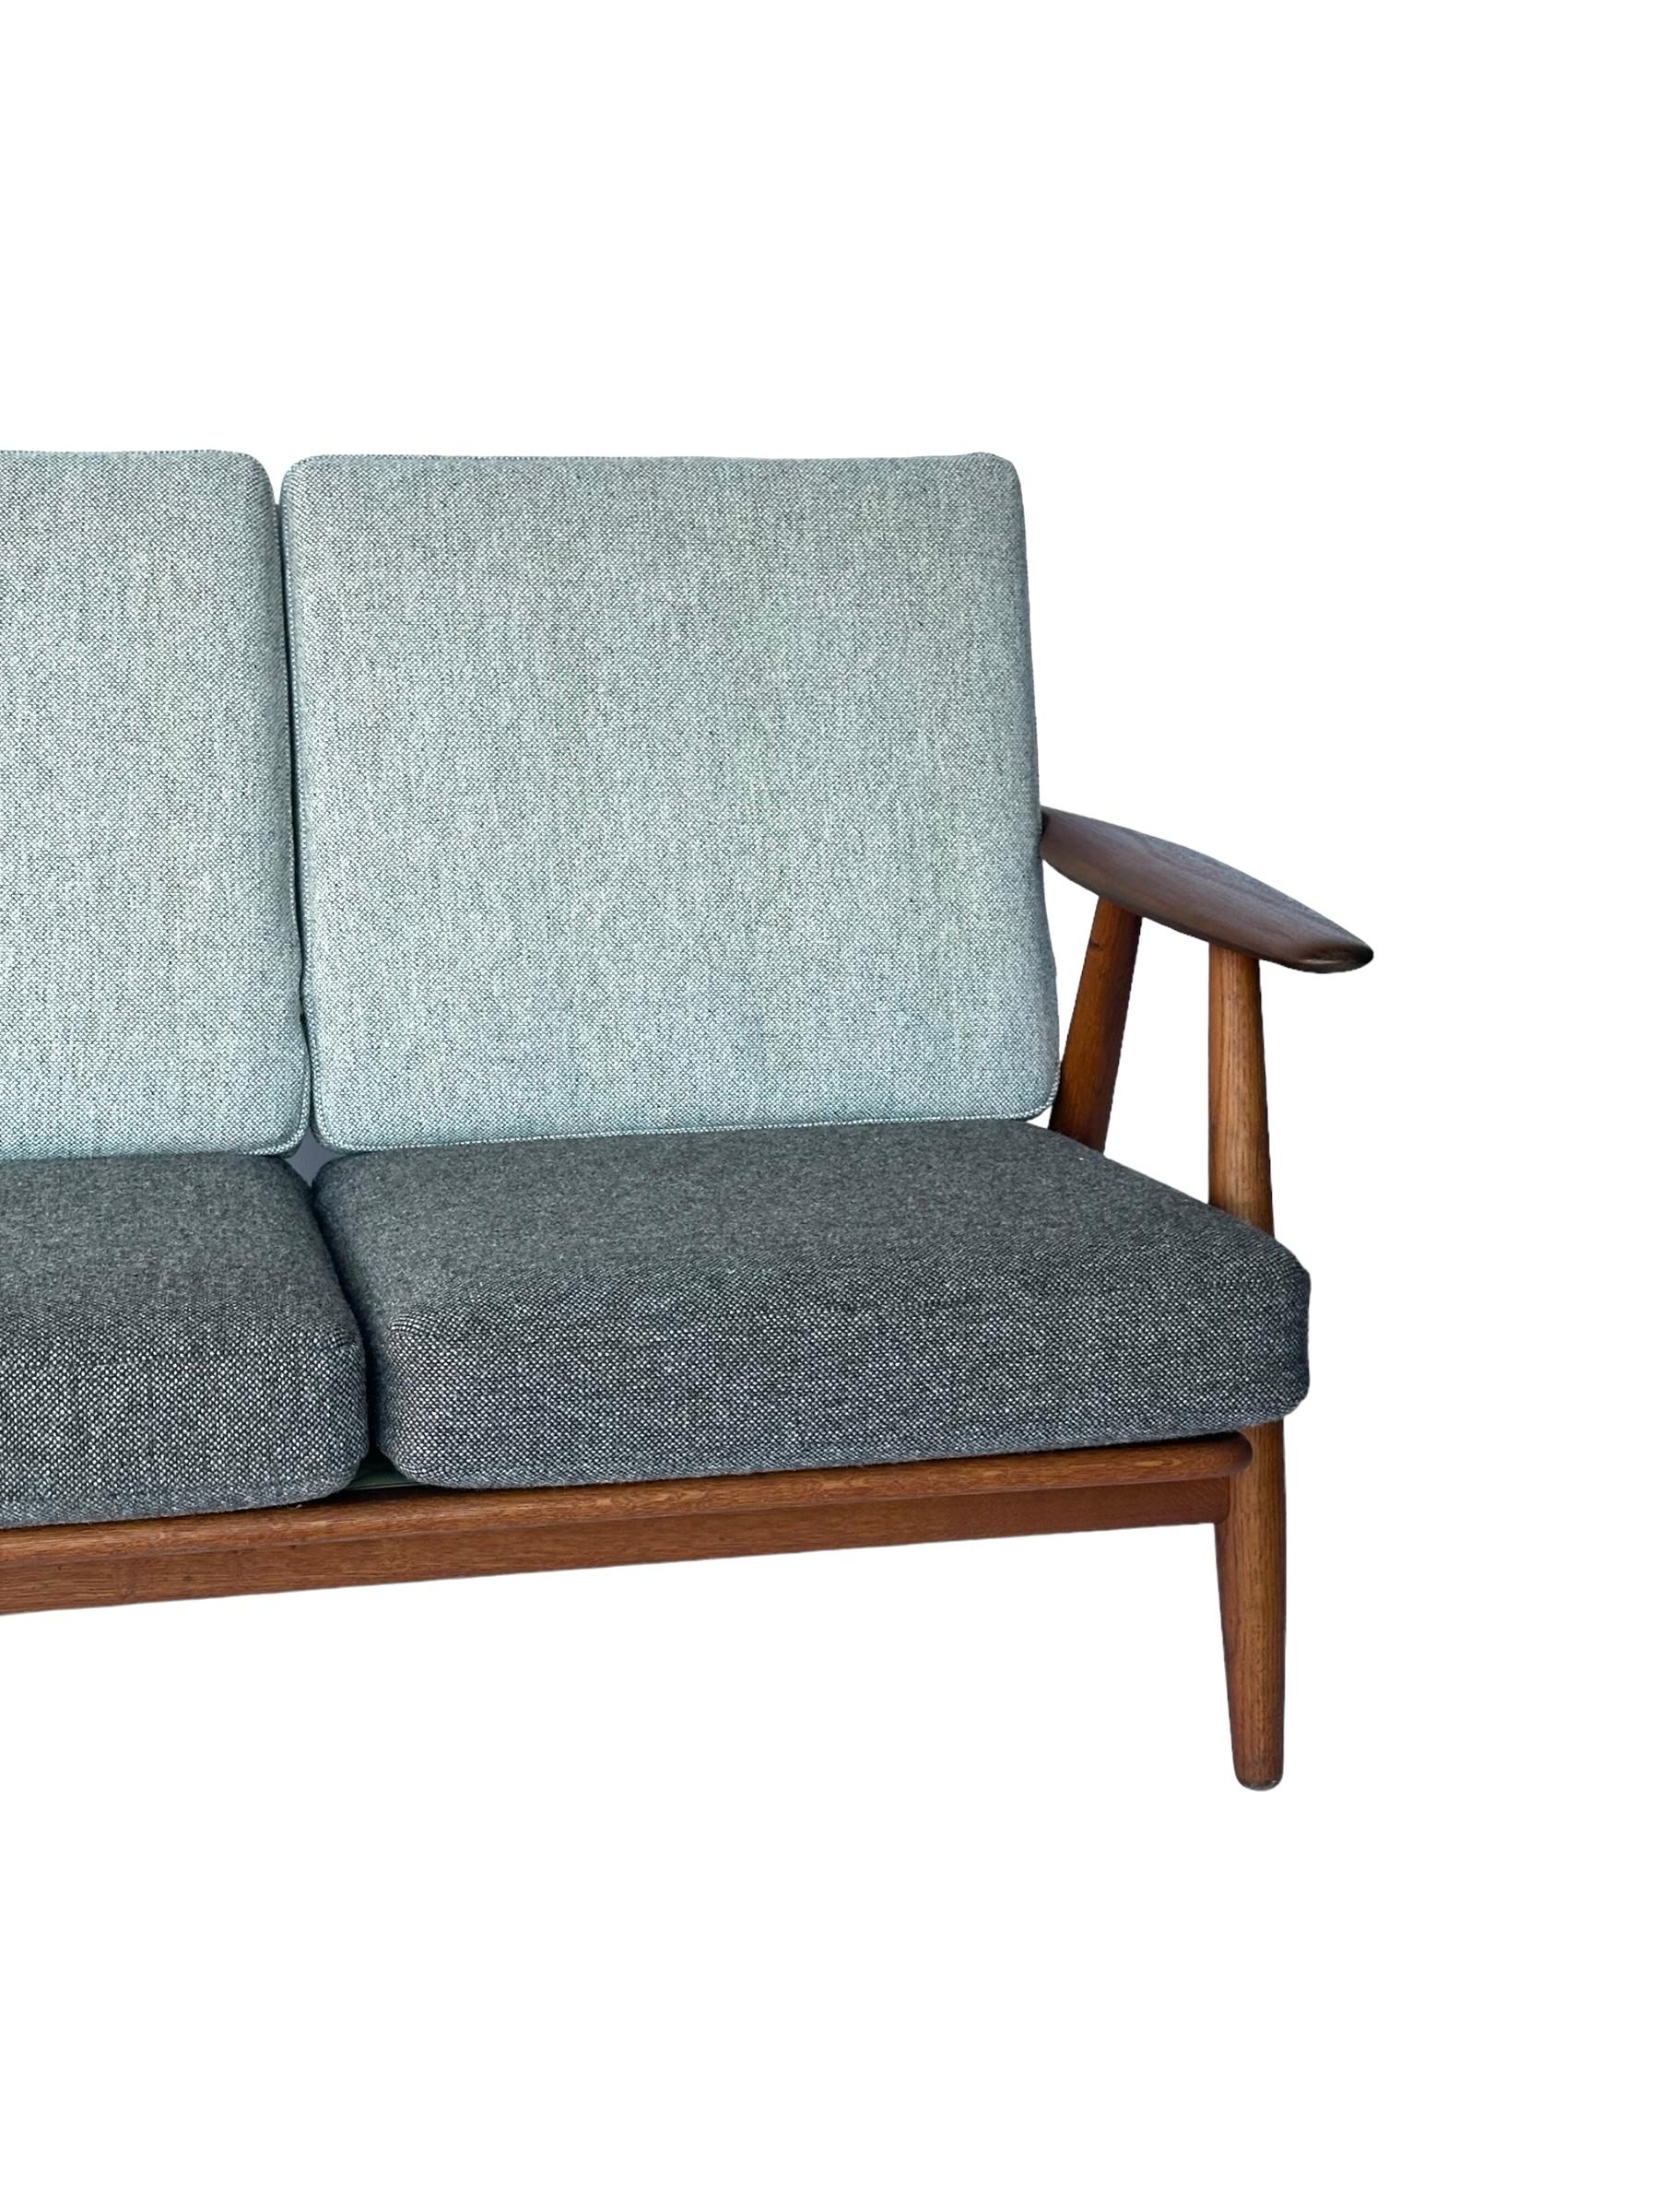 Scandinavian Modern Hans J. Wegner for Getama Signed Sofa with new Mataram Upholstery For Sale